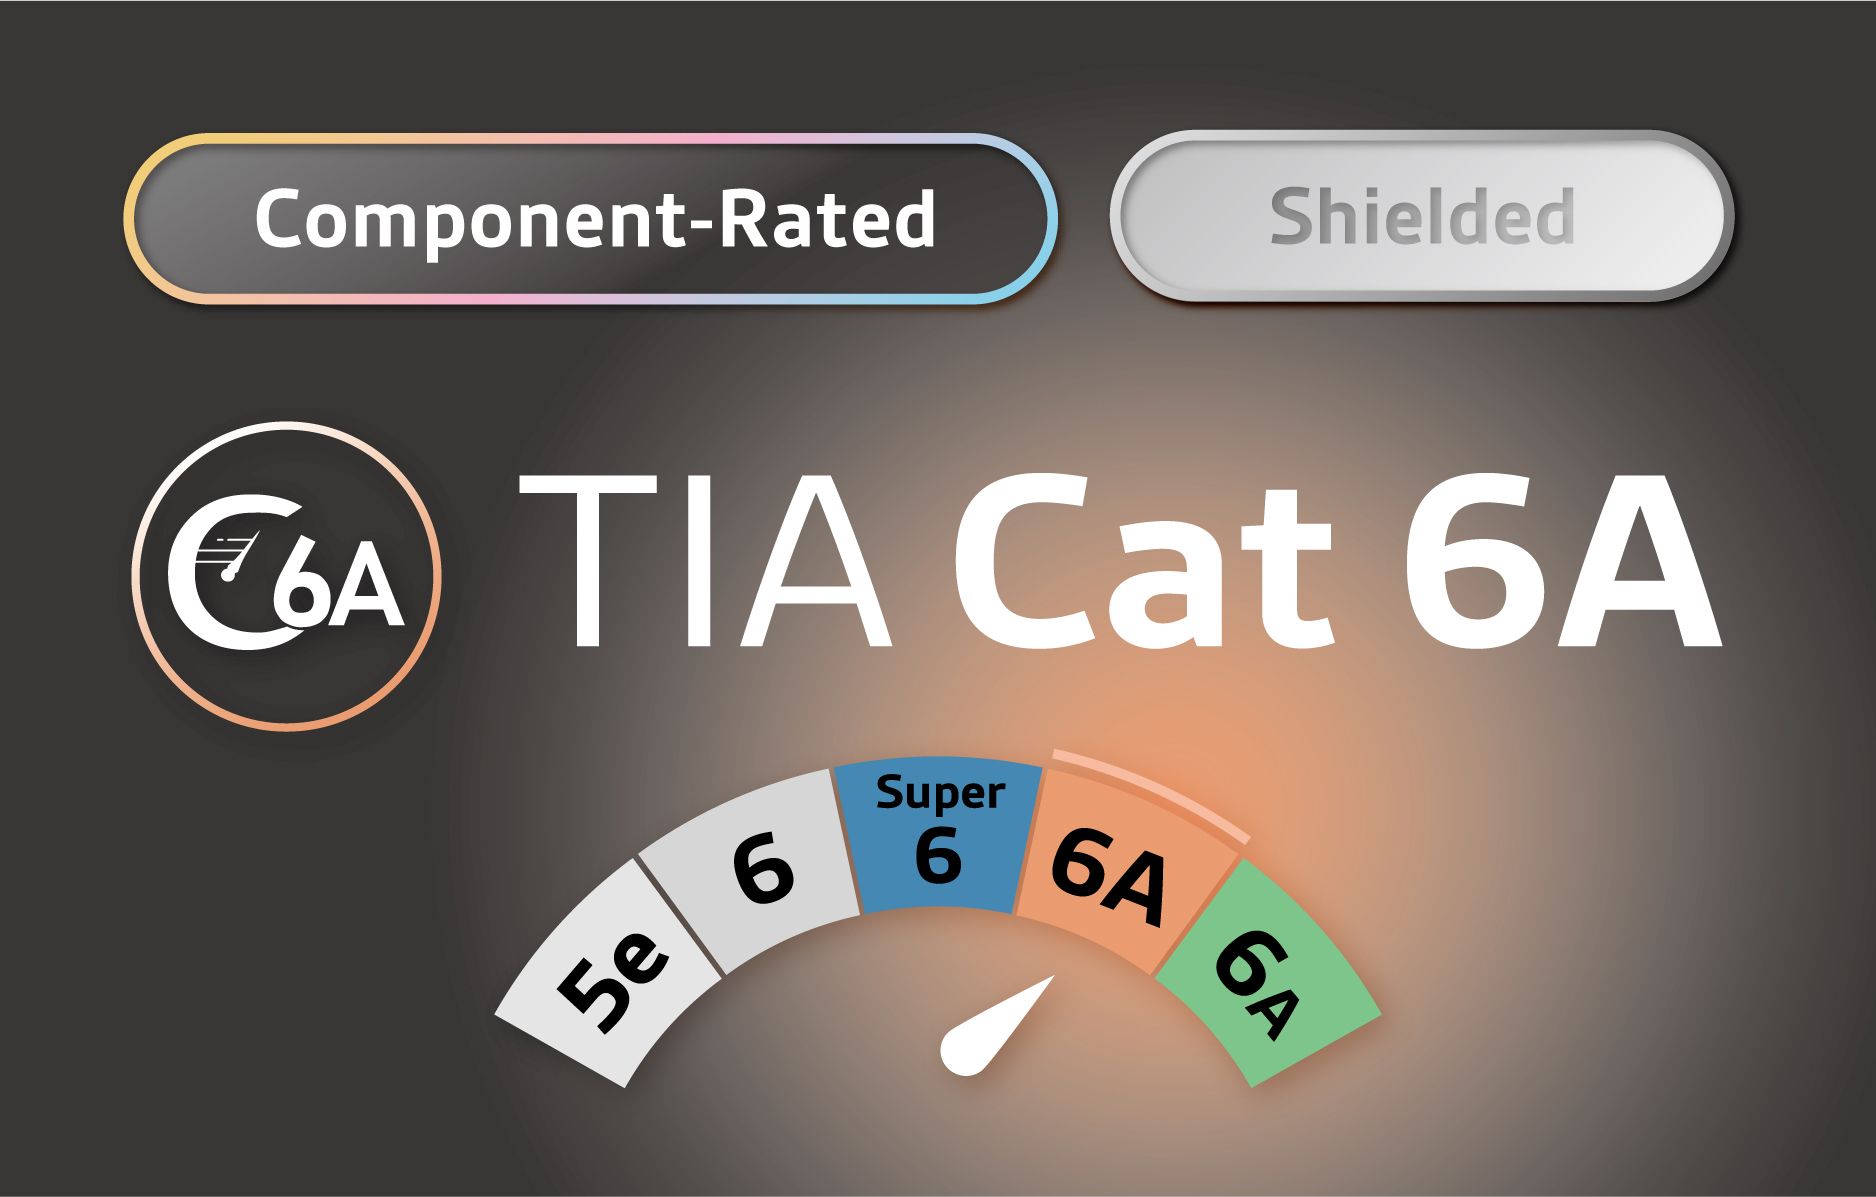 STP - Компонентная экранированная категория TIA Cat 6A - Компонентное экранированное решение TIA C6A